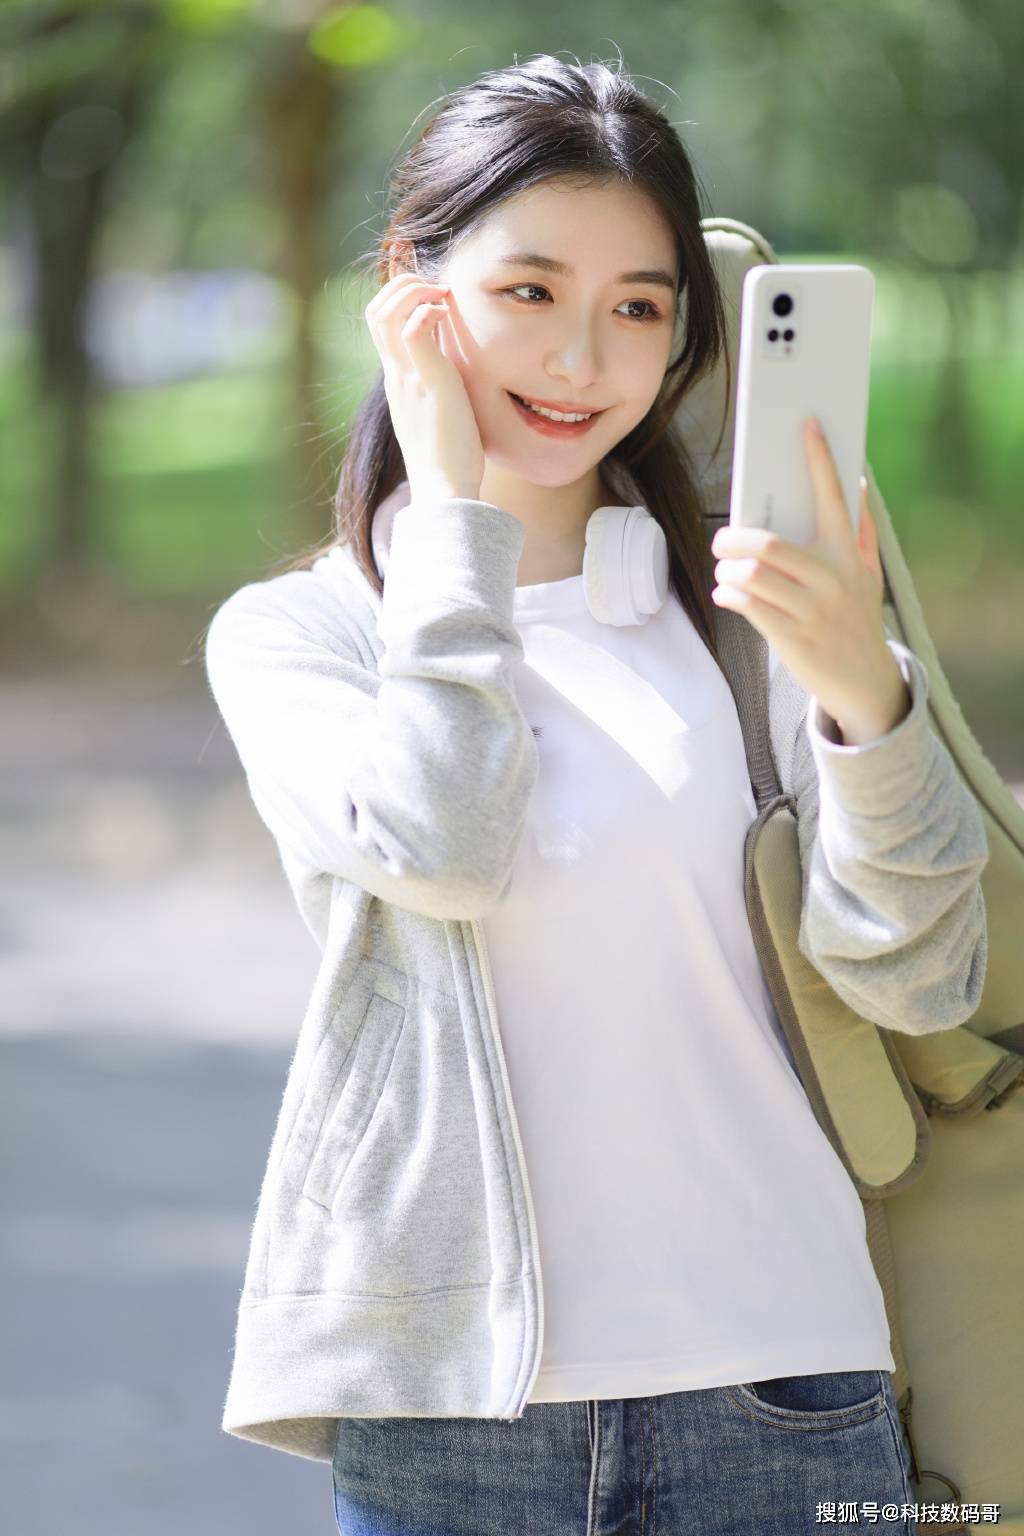 华为双屏幕手机推荐
:双十二期间骁龙870来到“白菜价”？魅族、红米、真我手机推荐！